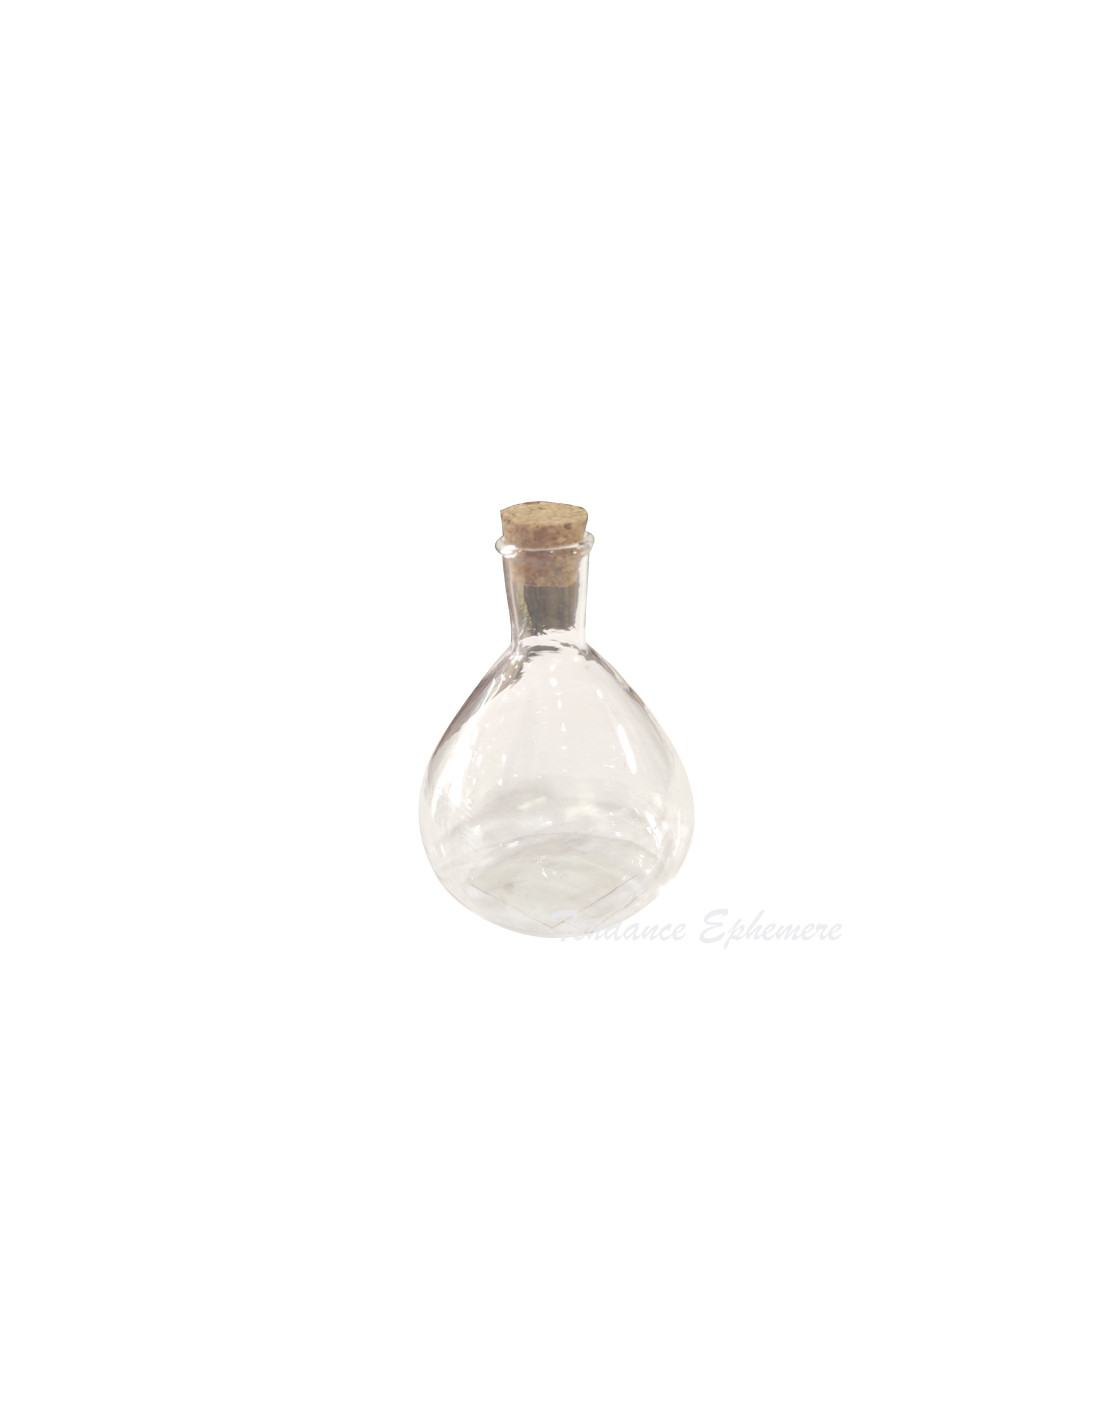 Petite bouteille en verre avec bouchon en liège 10mm * 28 mm